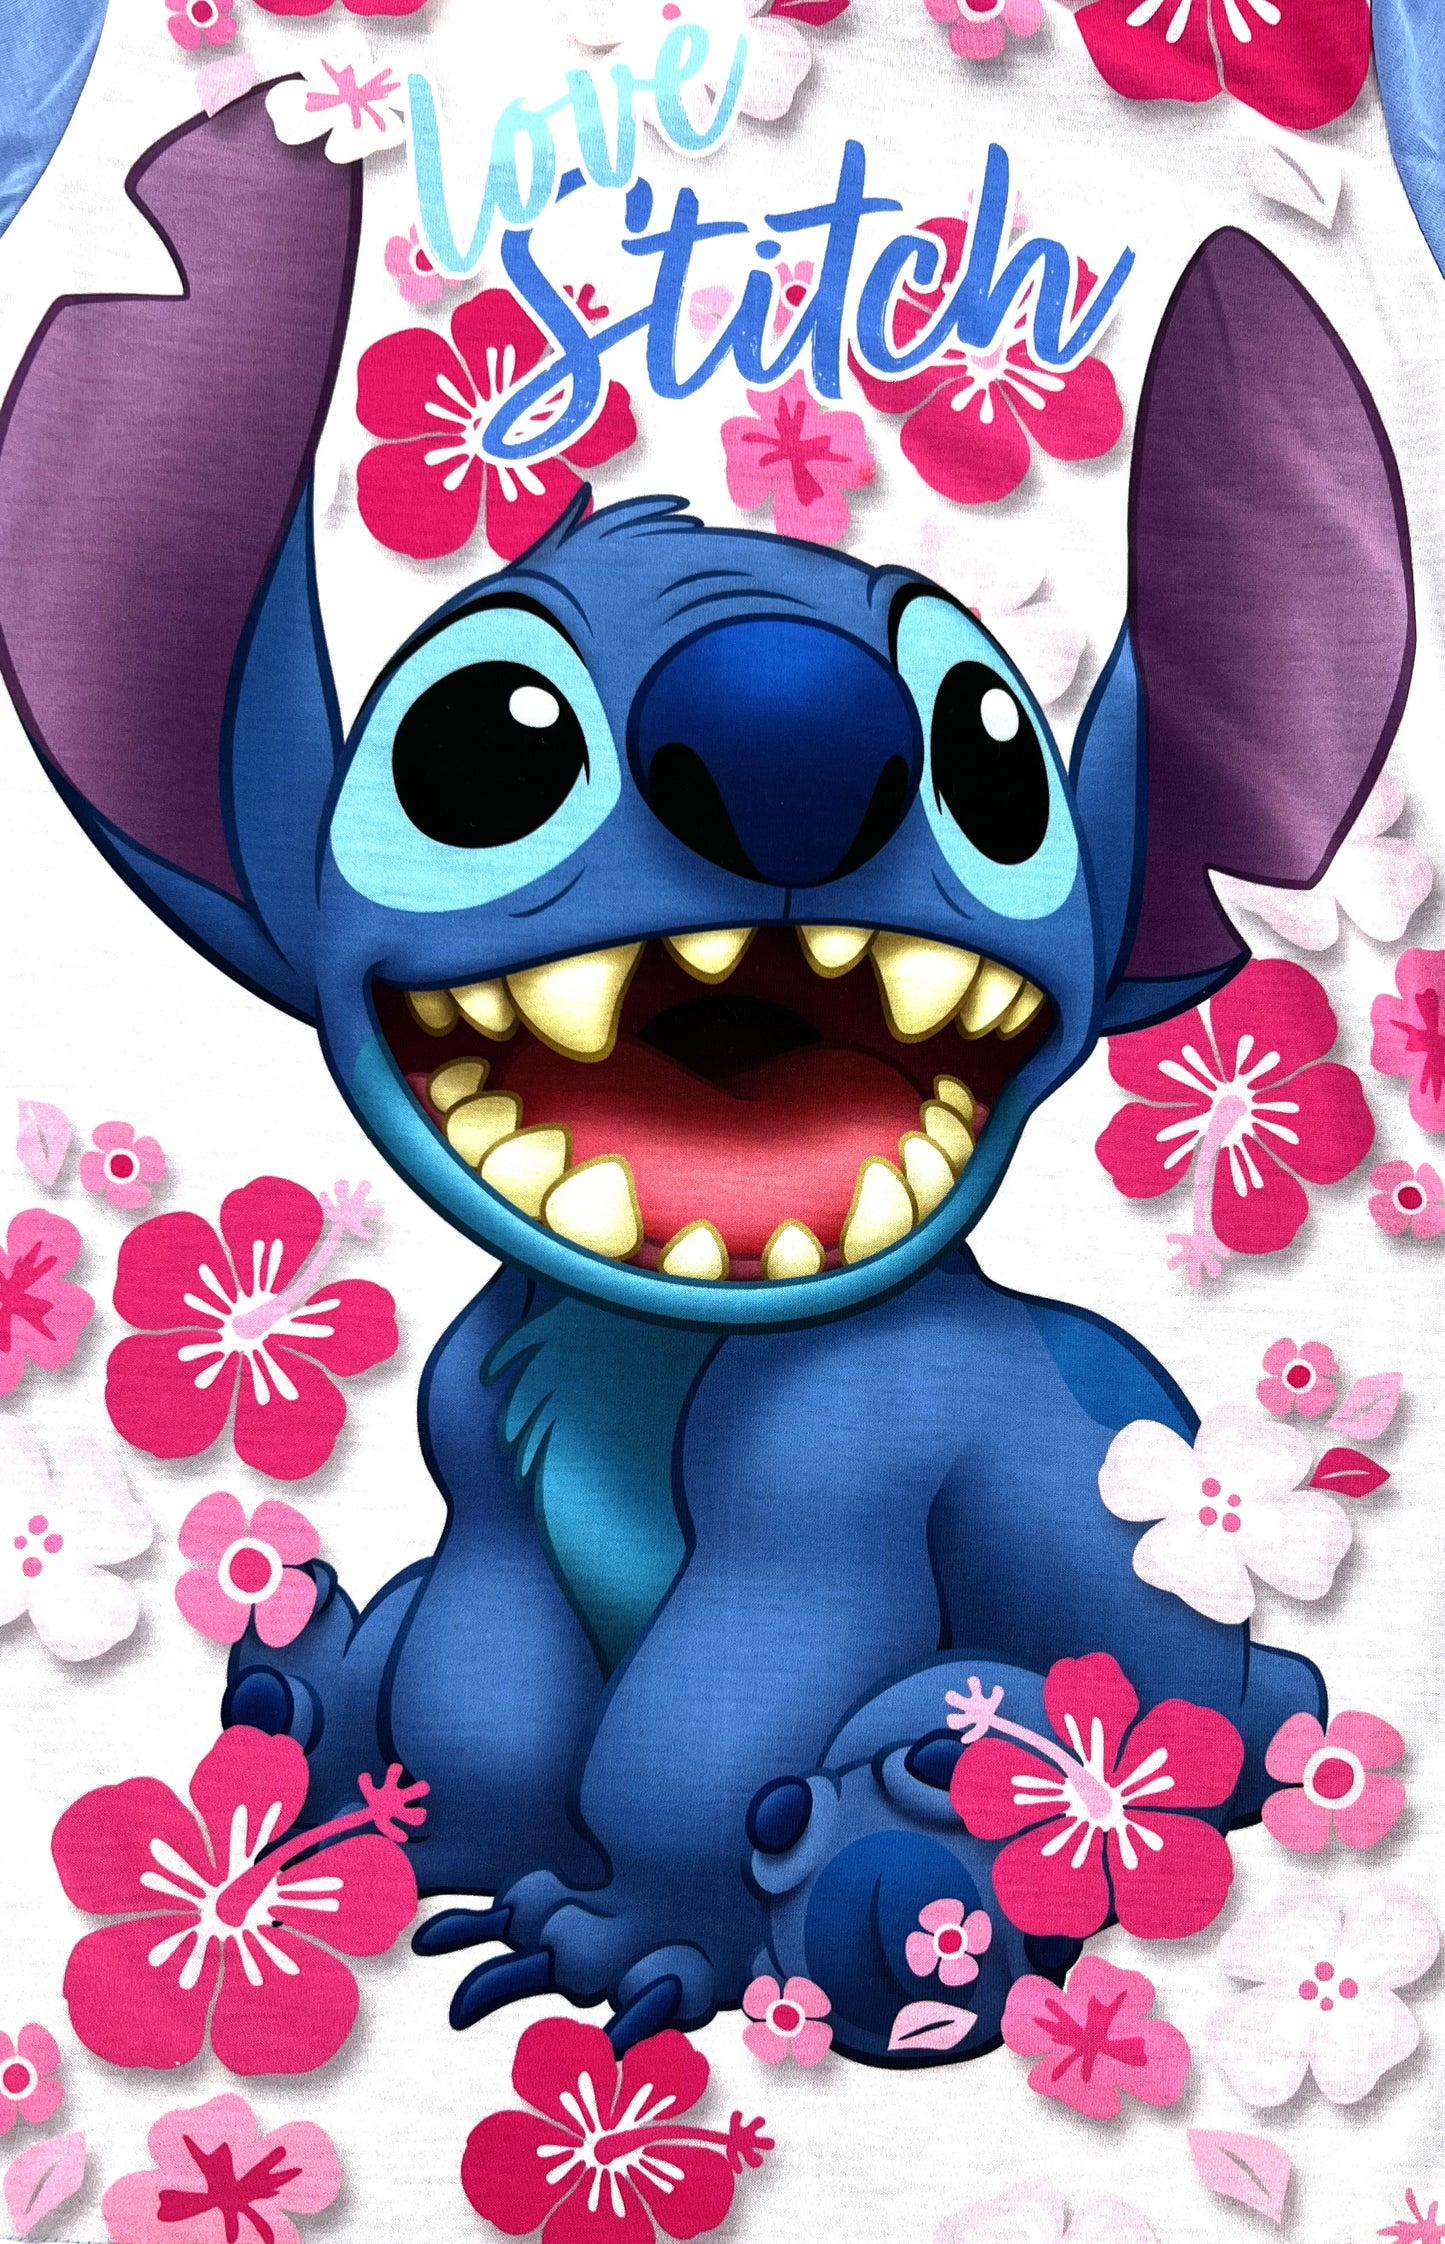 Disney Lilo & Stitch Girl’ Nightie Nightdress 5-12 Year